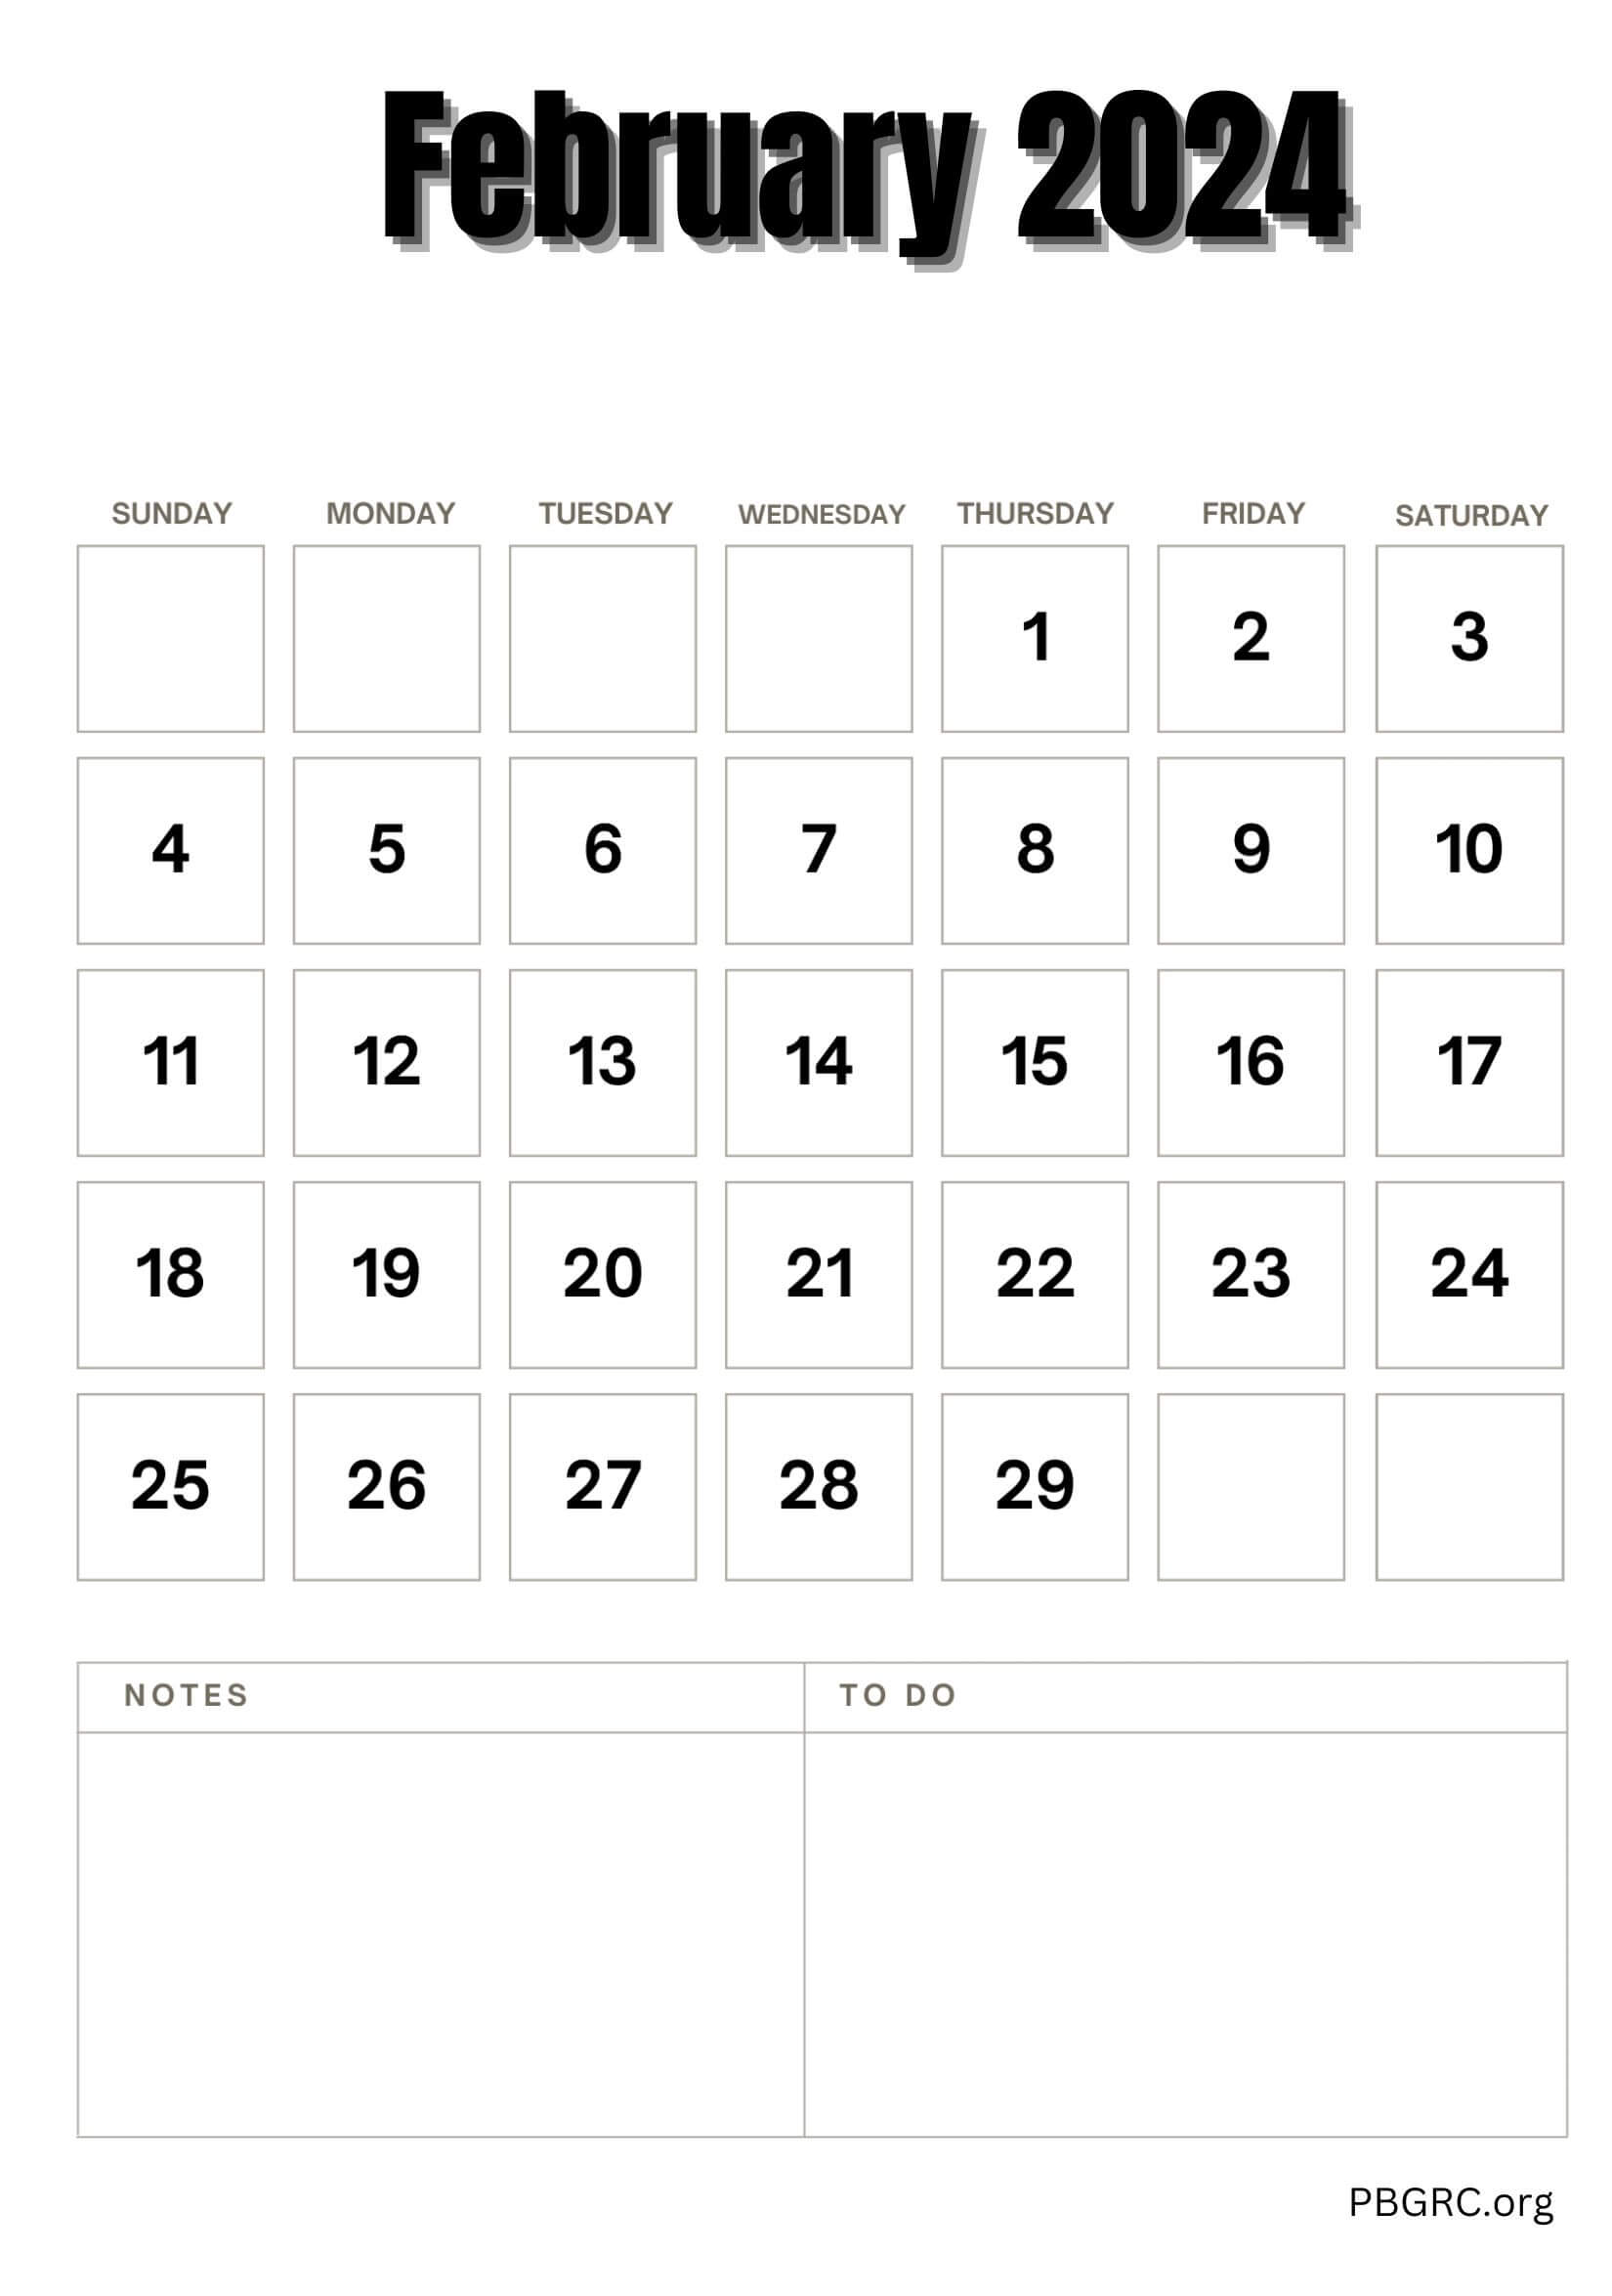 Free Printable February 2024 Calendar To Do List